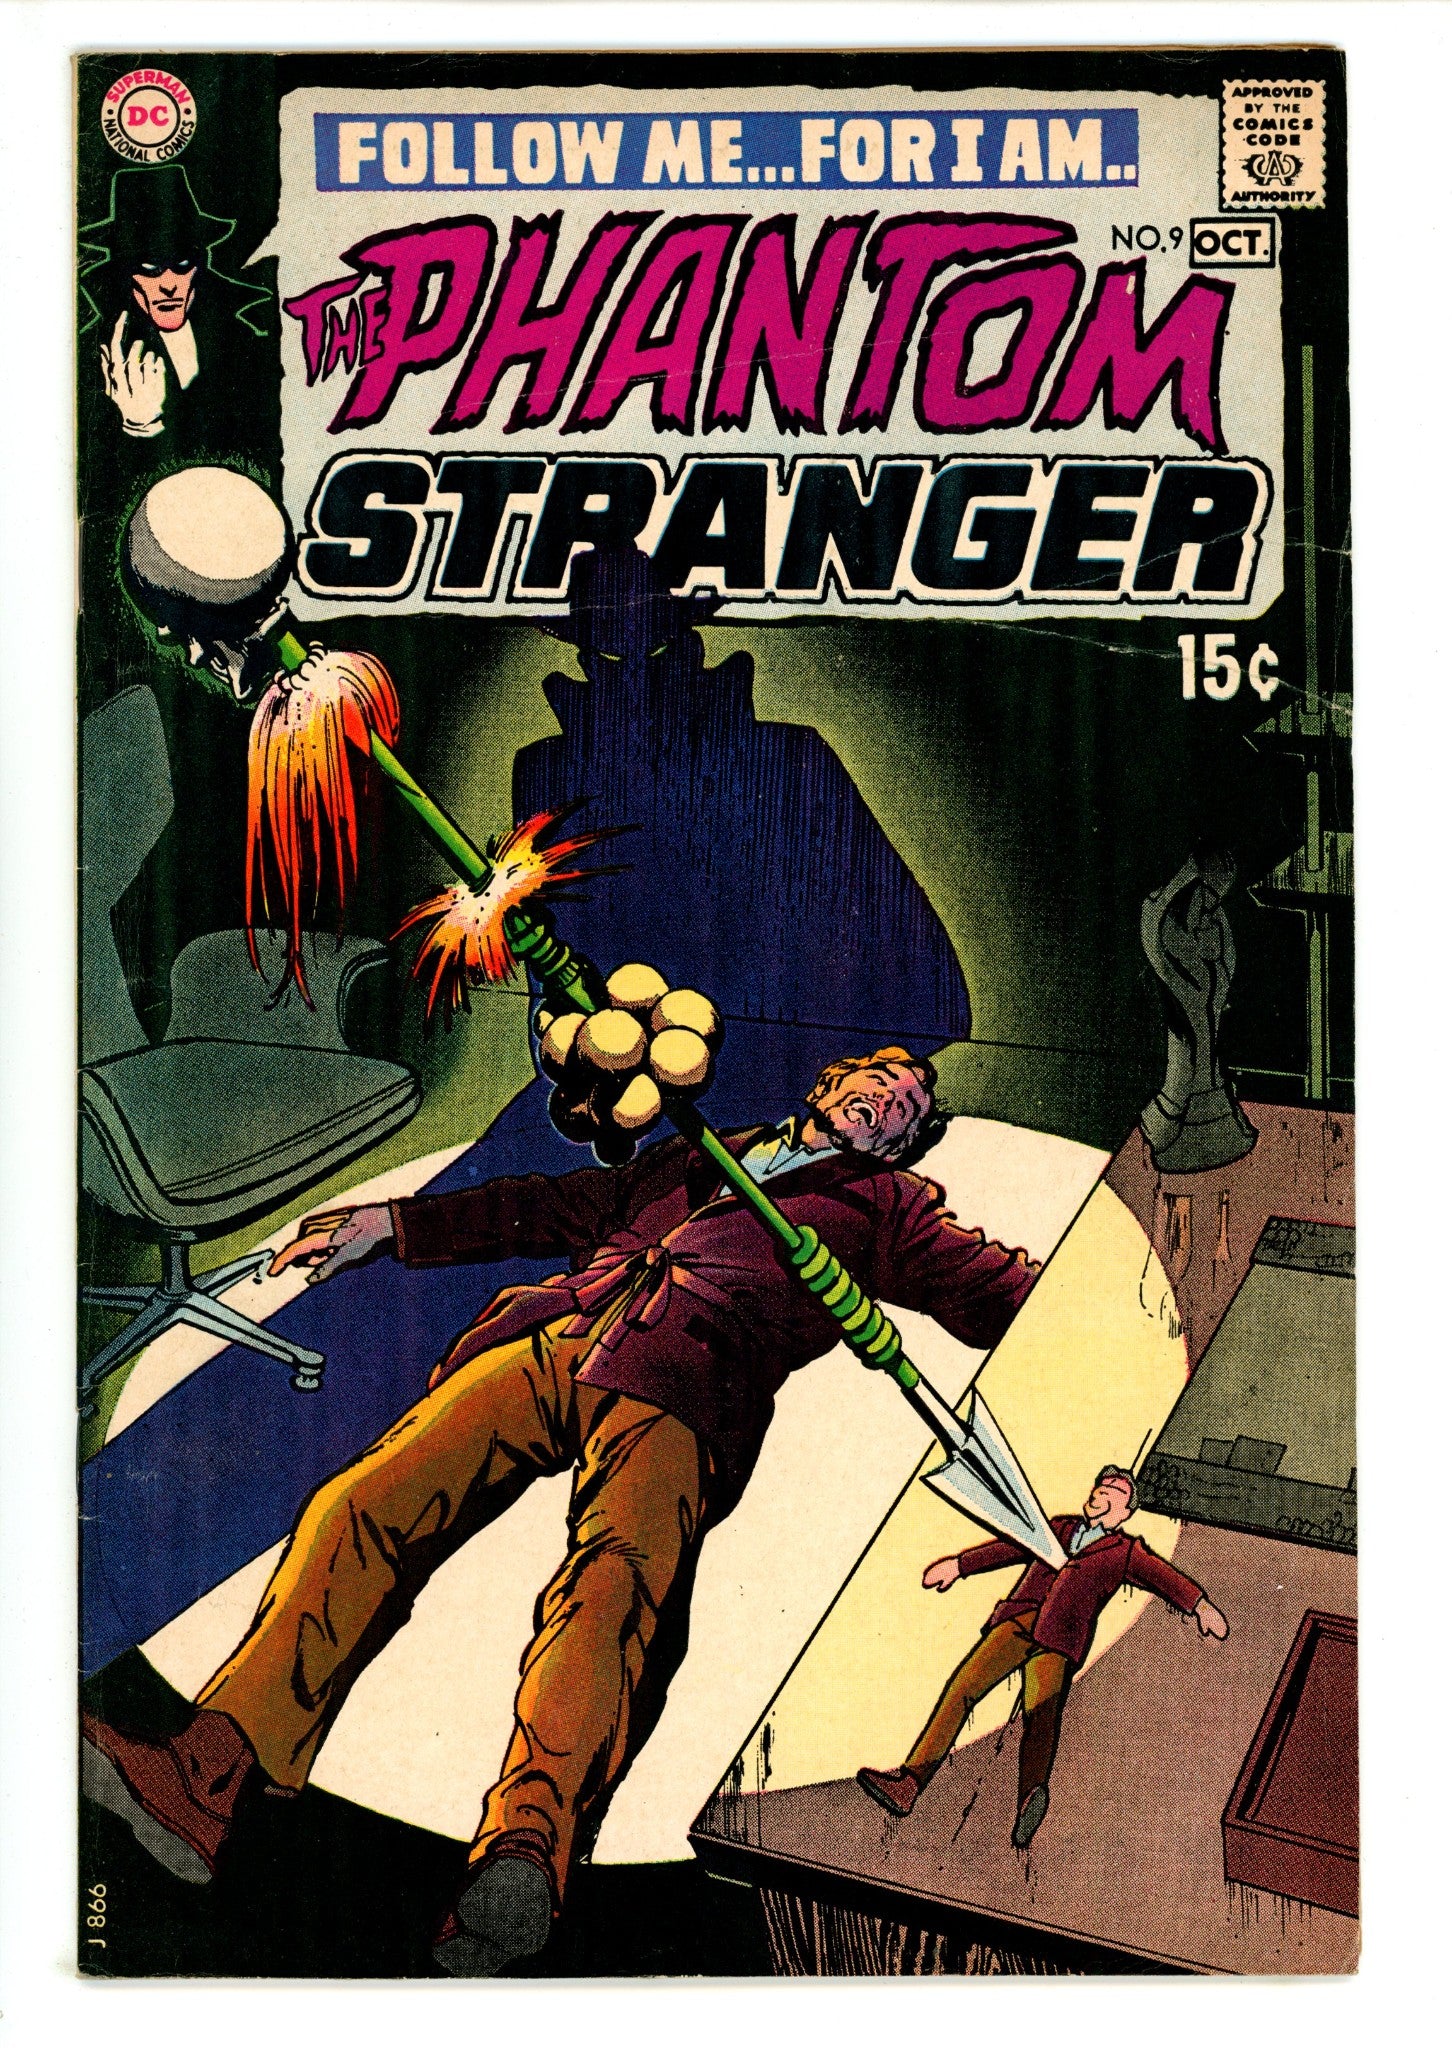 The Phantom Stranger Vol 2 9 FN (6.0) (1970) 